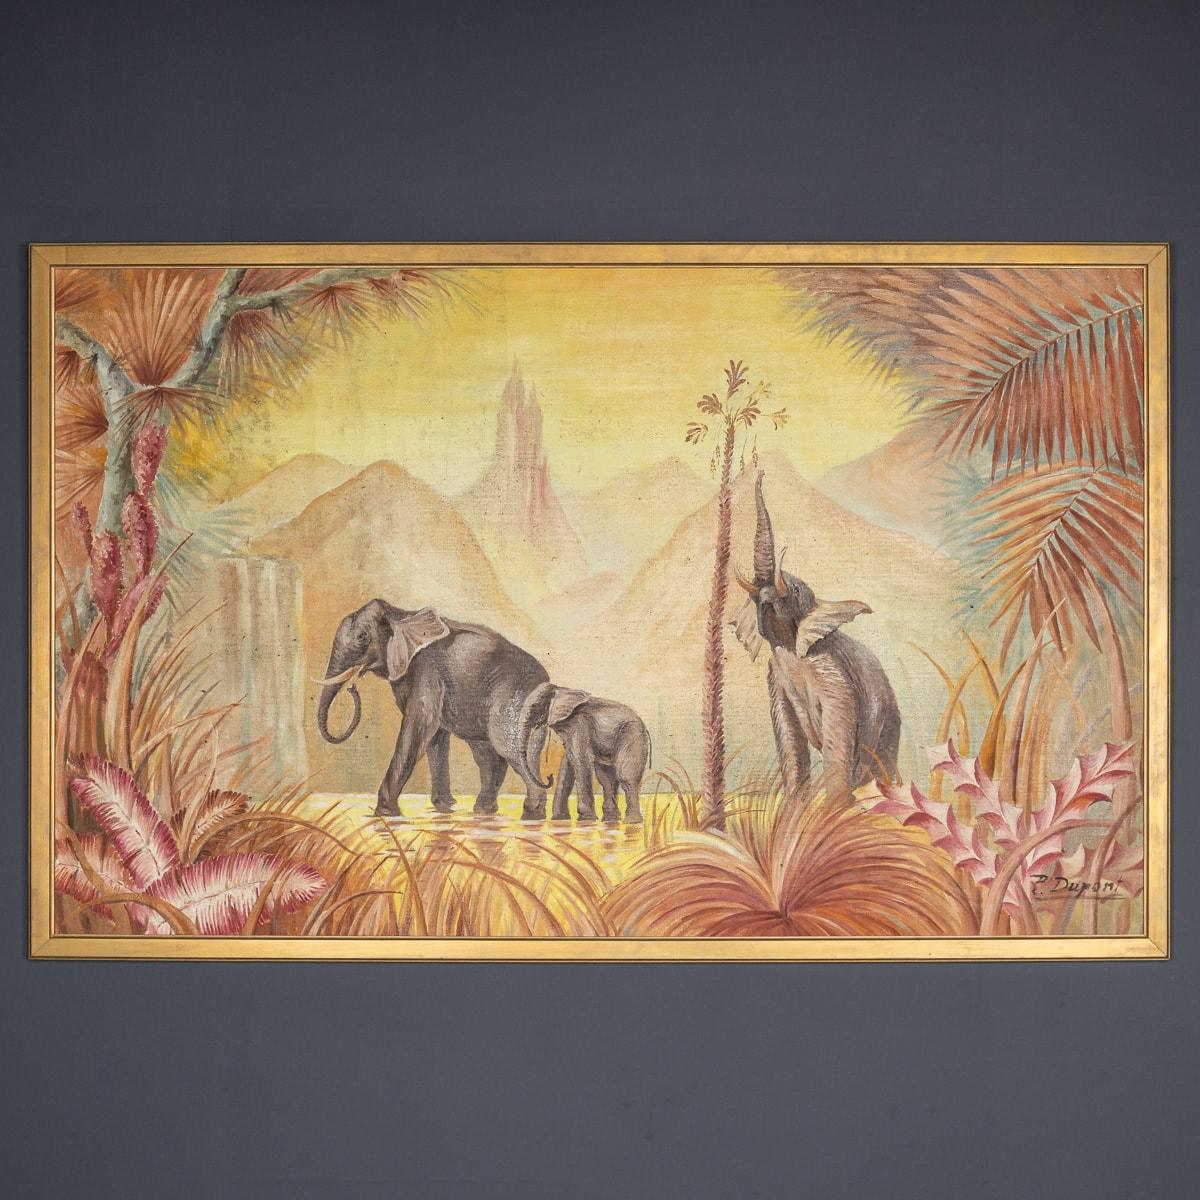 Ein atemberaubendes Ölgemälde aus der Mitte des 20. Jahrhunderts, das eine Elefantenfamilie zeigt, die durch den Dschungel schlendert. Die Eltern führen ihre Jungen mitten im Grünen. Es ist ein schönes Stück für jedes Zuhause und passt gut zu